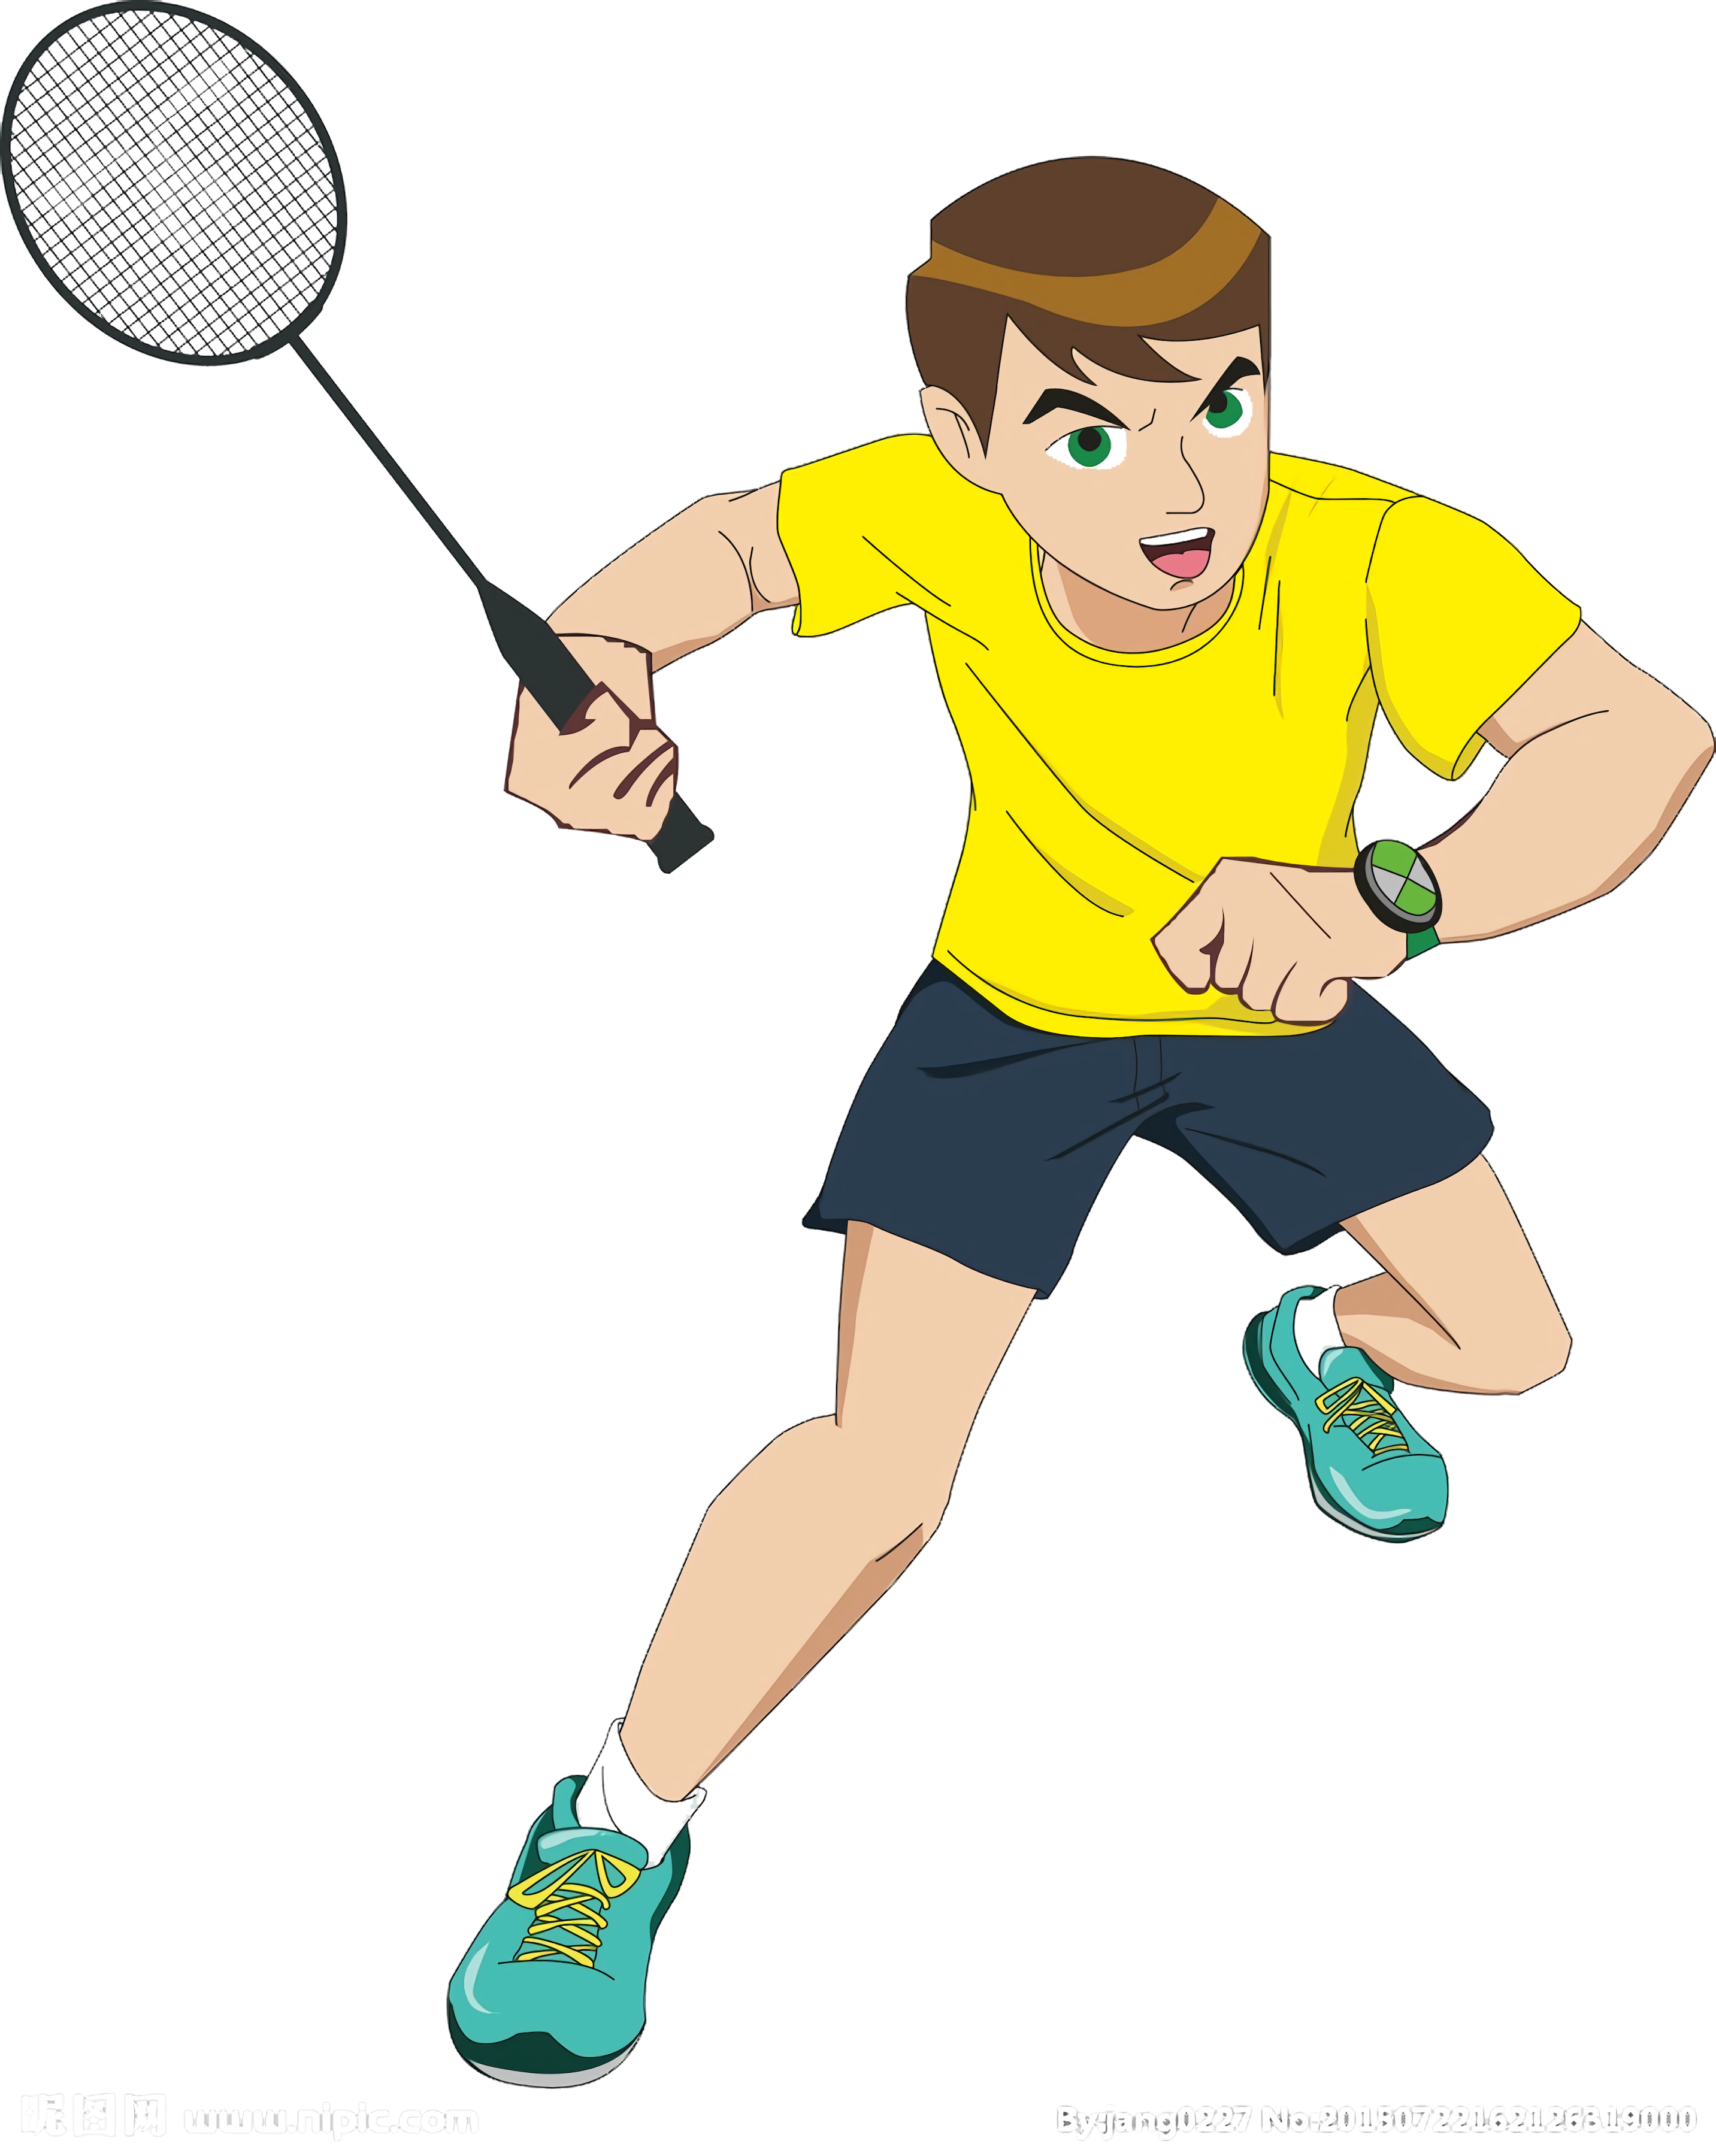 Badmintonspel